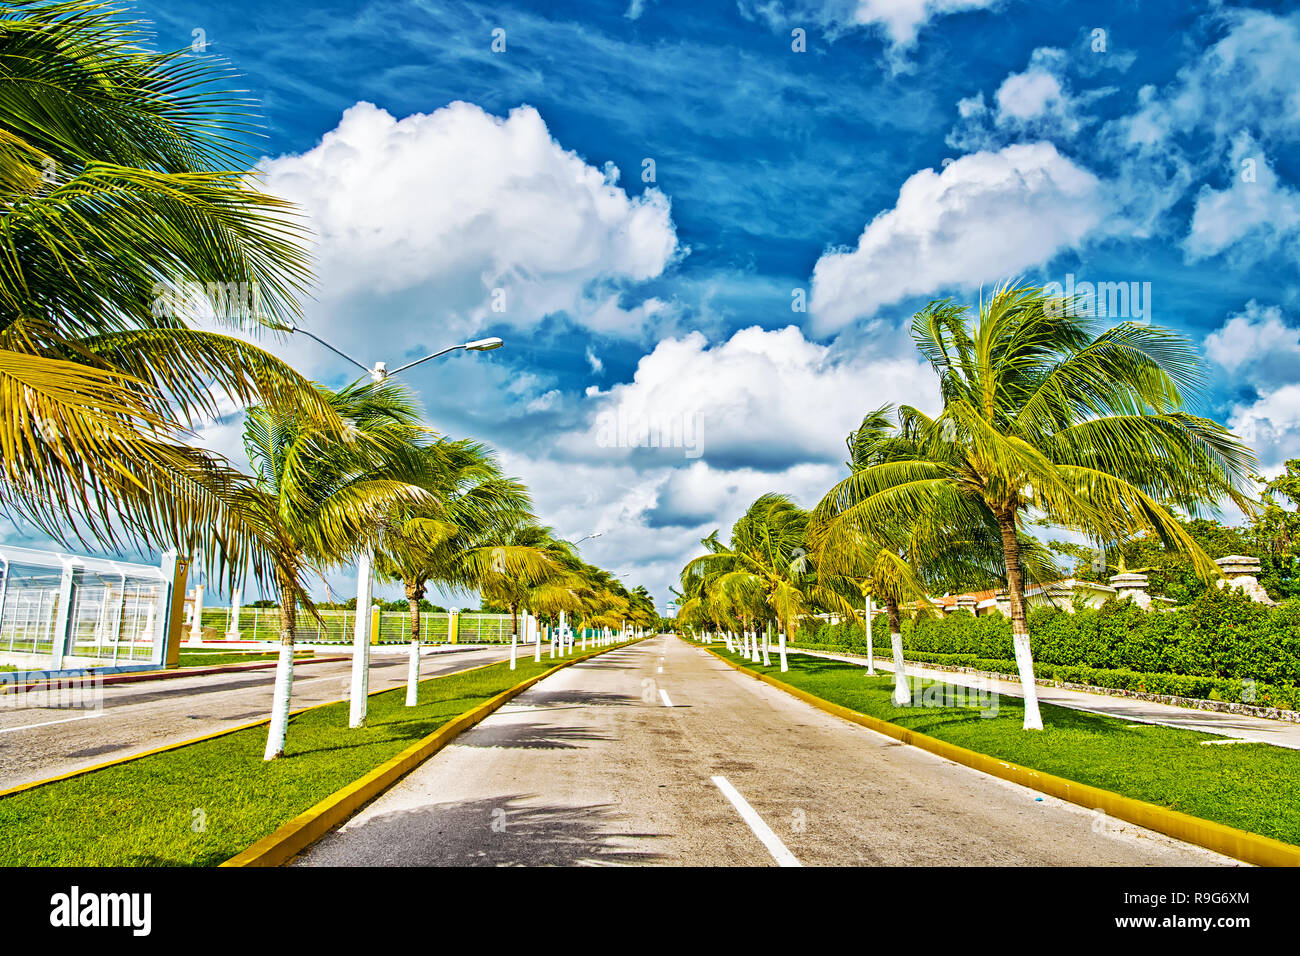 Exotische Autobahn Straße mit grünen Palmen in sonnigem windigen Wetter im  Freien auf blauer Himmel mit weißen Wolken Hintergrund, Cozumel, Mexiko  Stockfotografie - Alamy